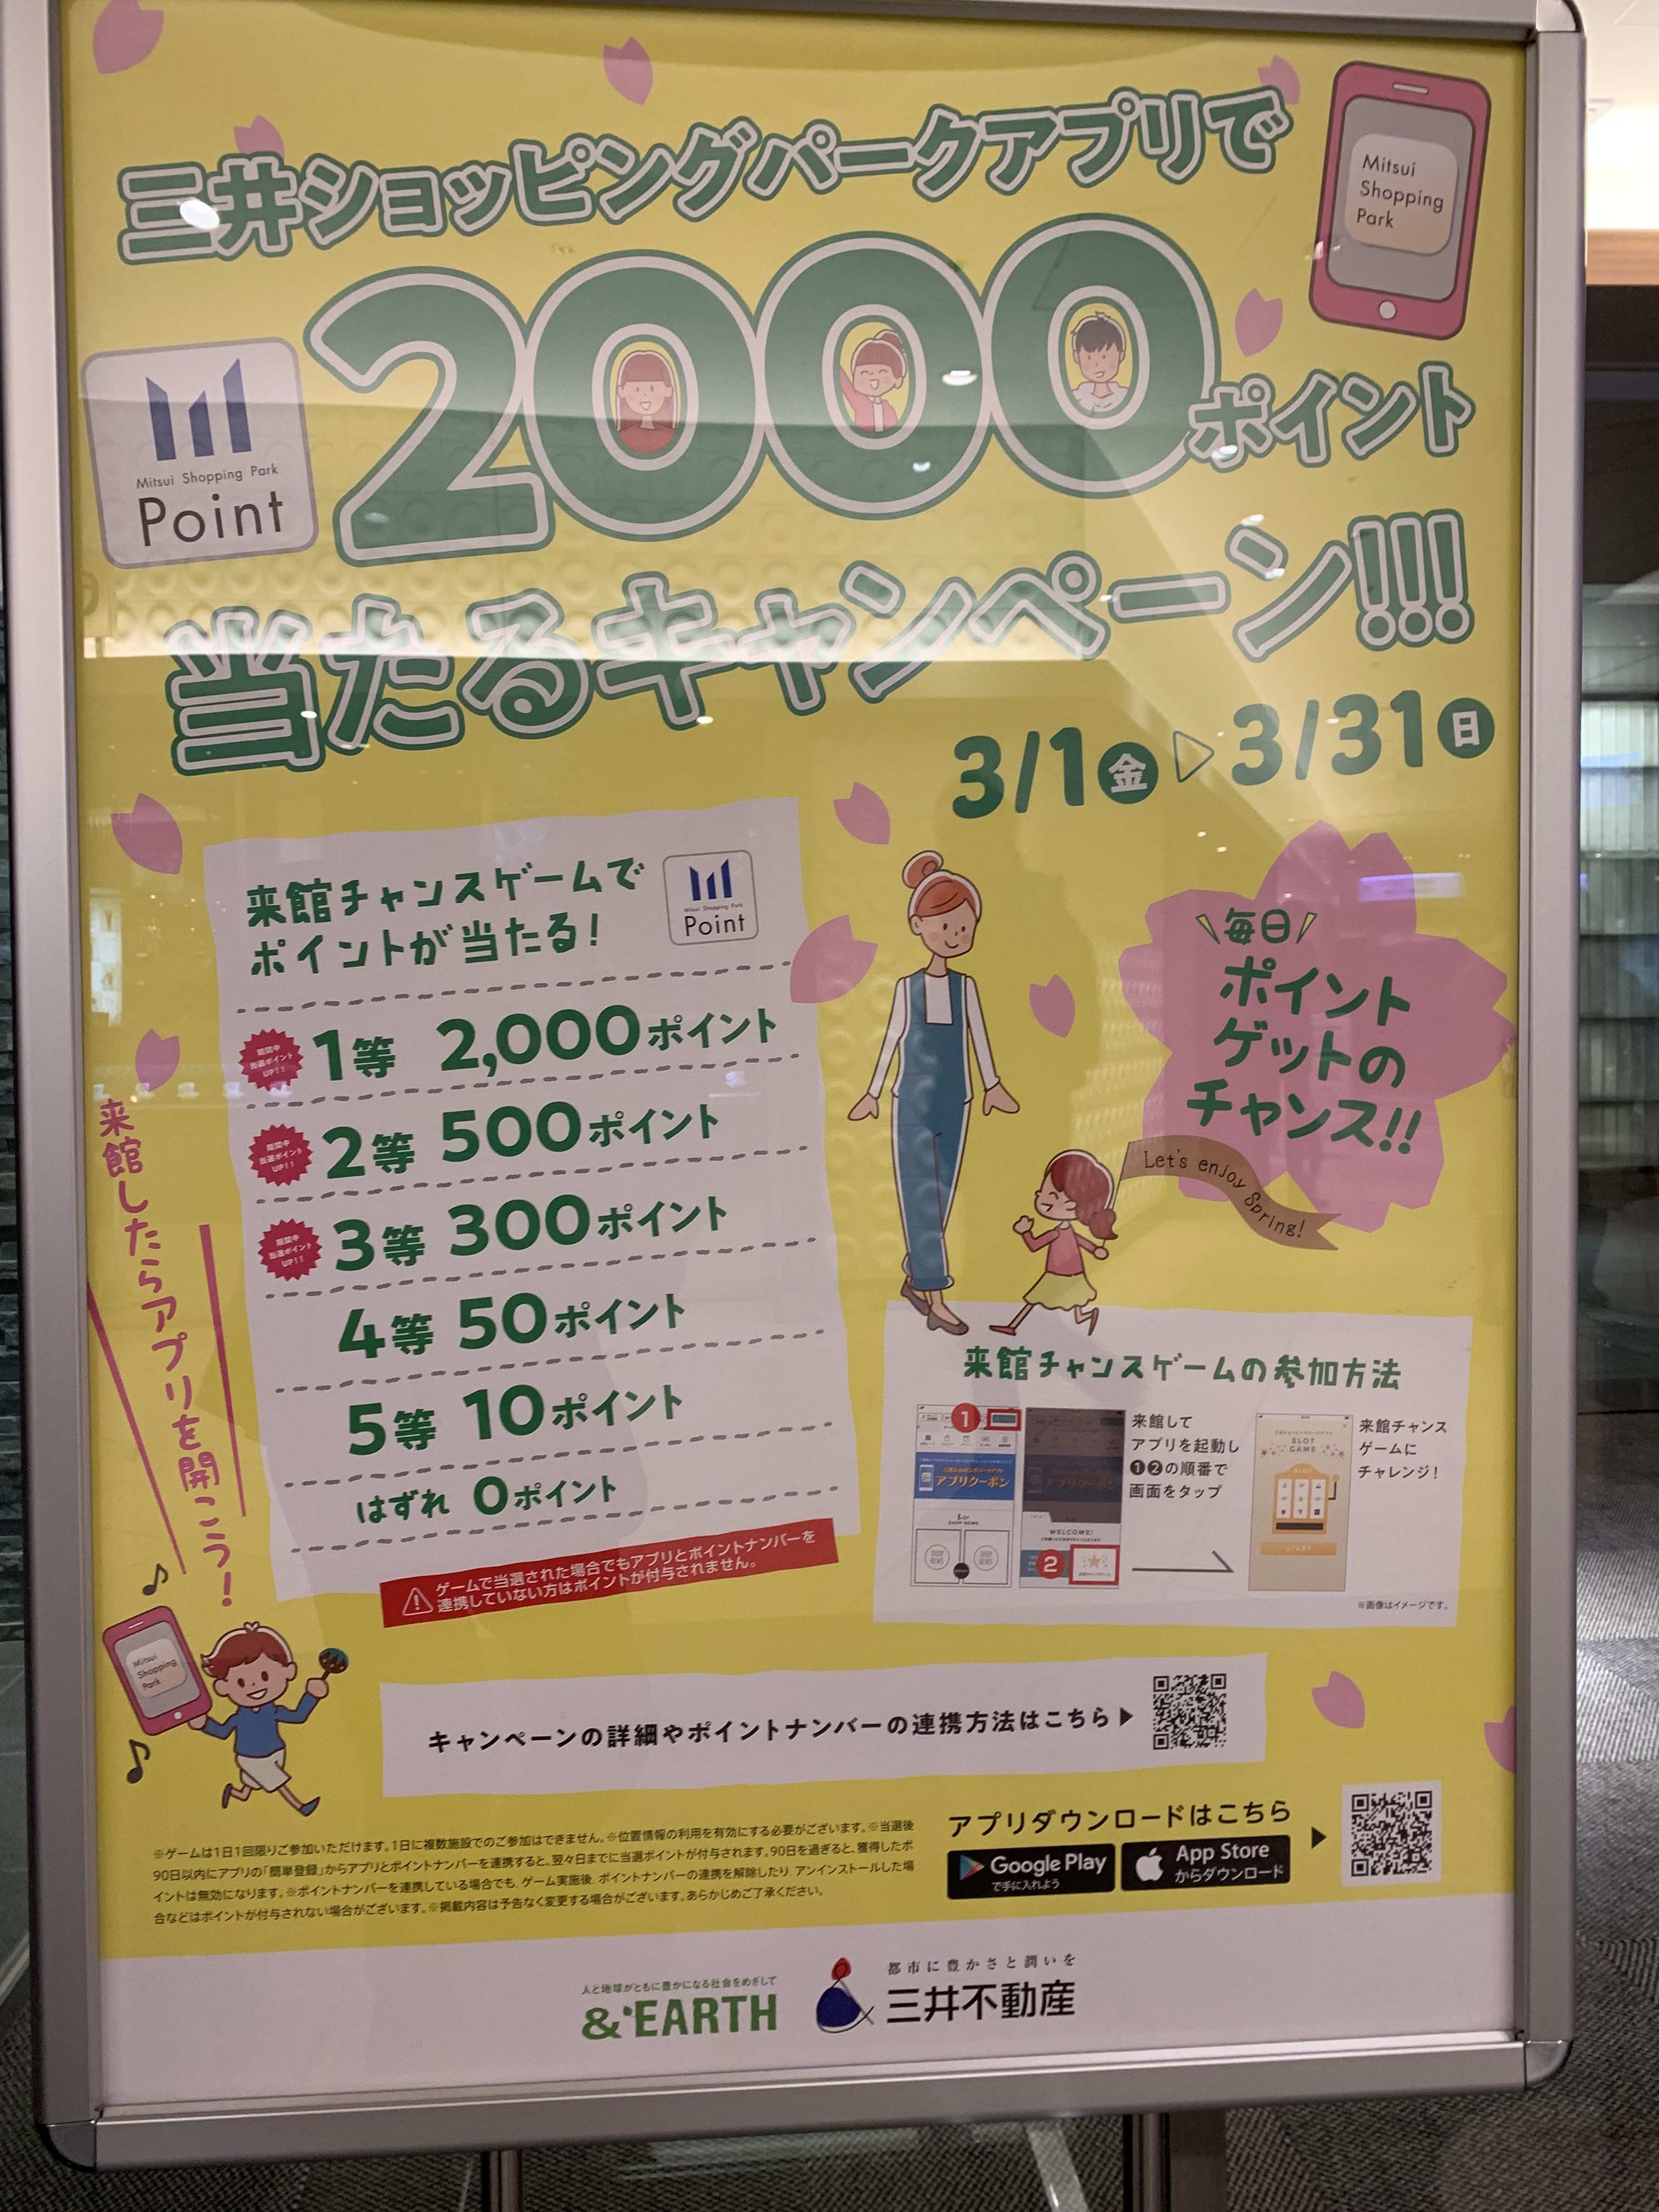 三井ショッピングパークアプリで2000ポイント